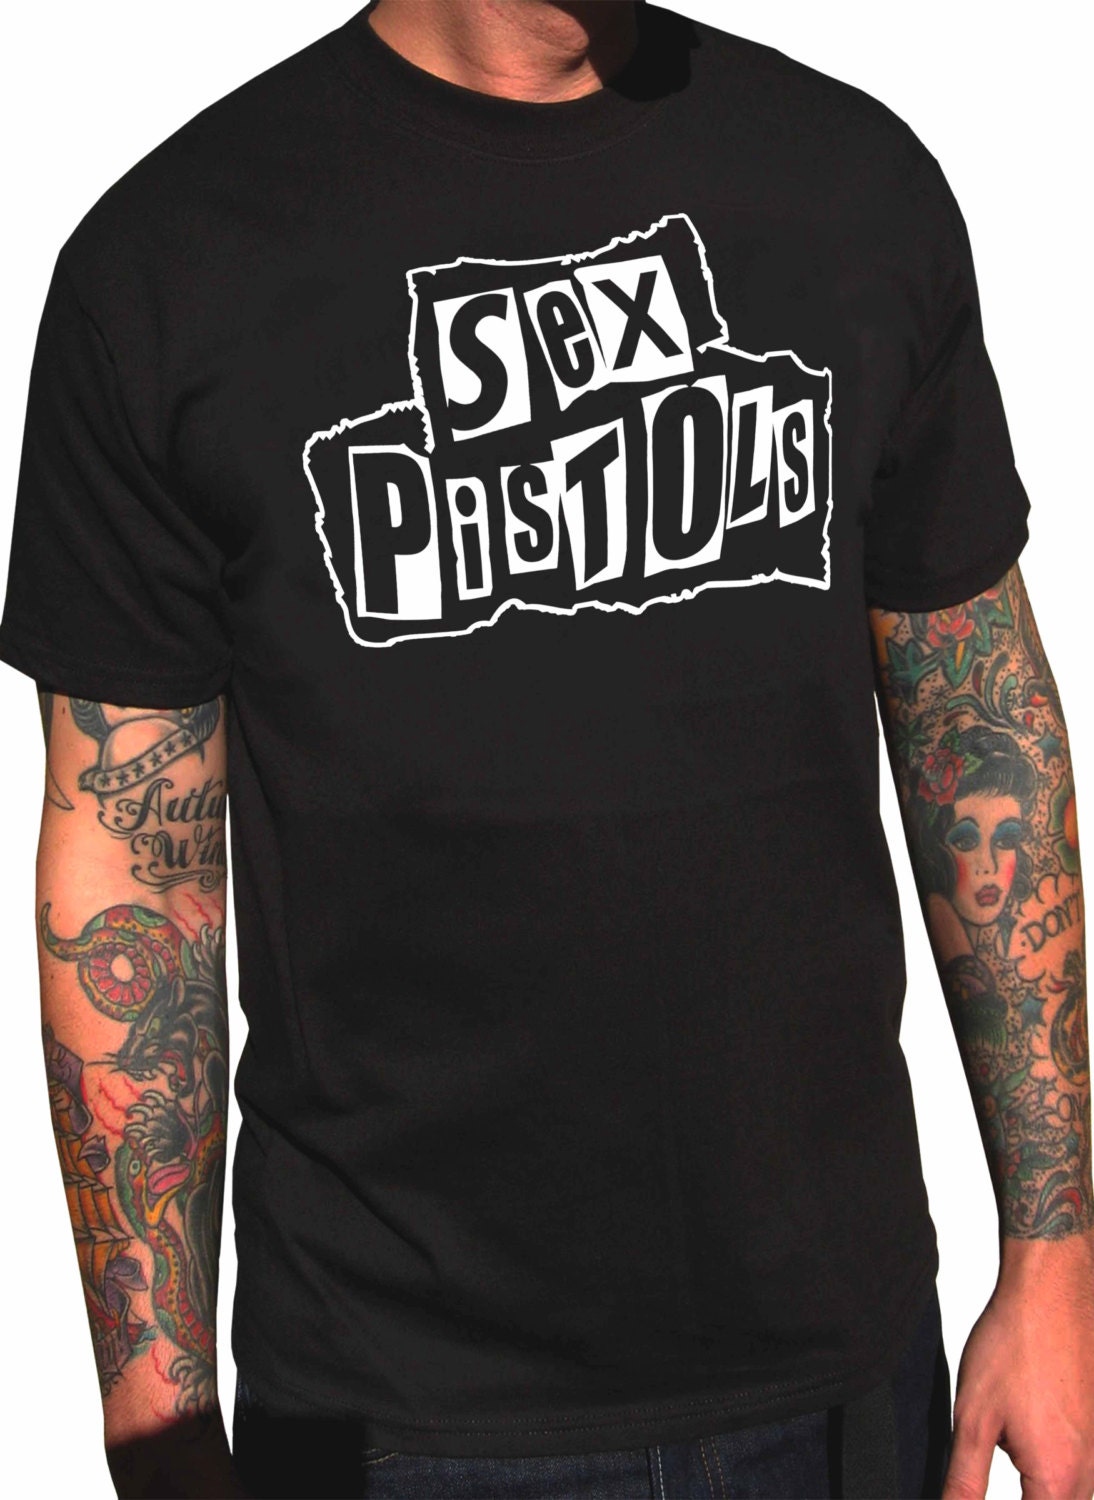 Sex Pistols T Shirt By Vennecydesign On Etsy 7411